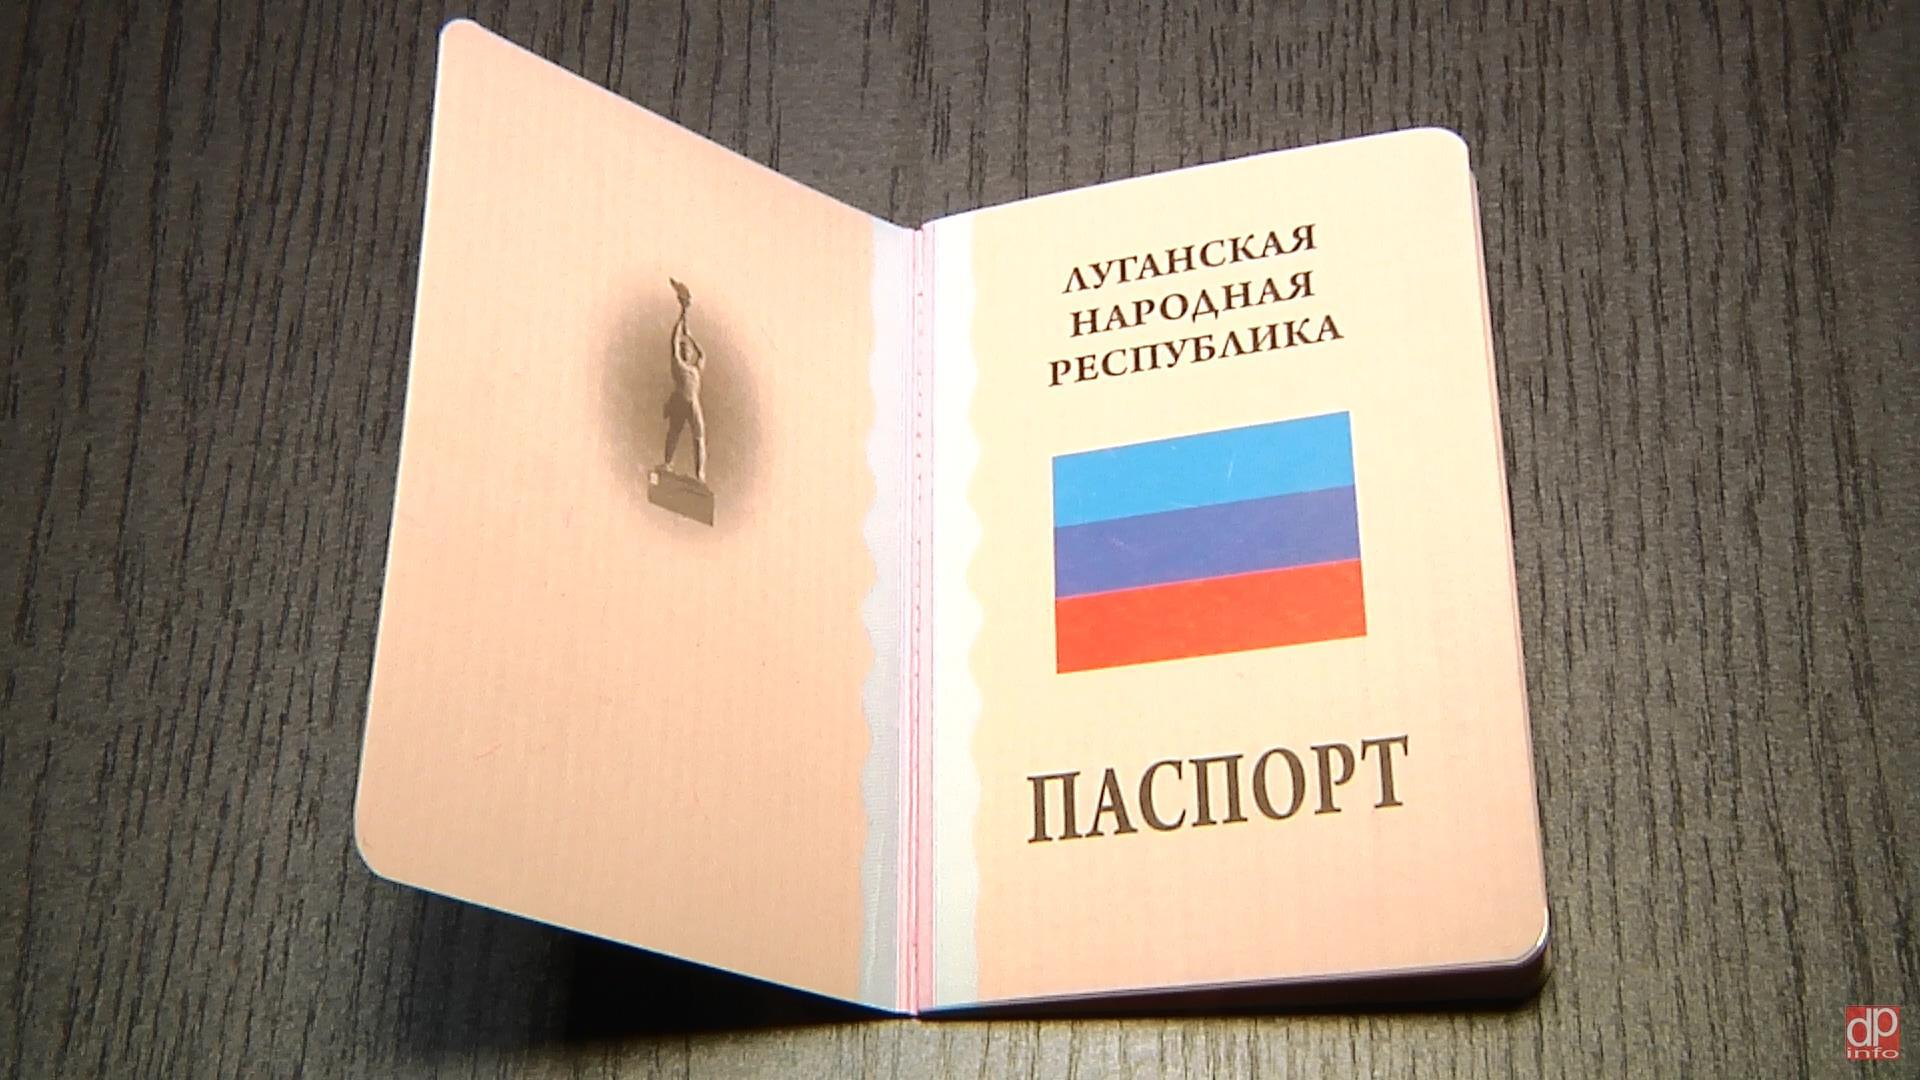 Более 10 тысяч жителей ЛНР стали обладателями паспортов Республики